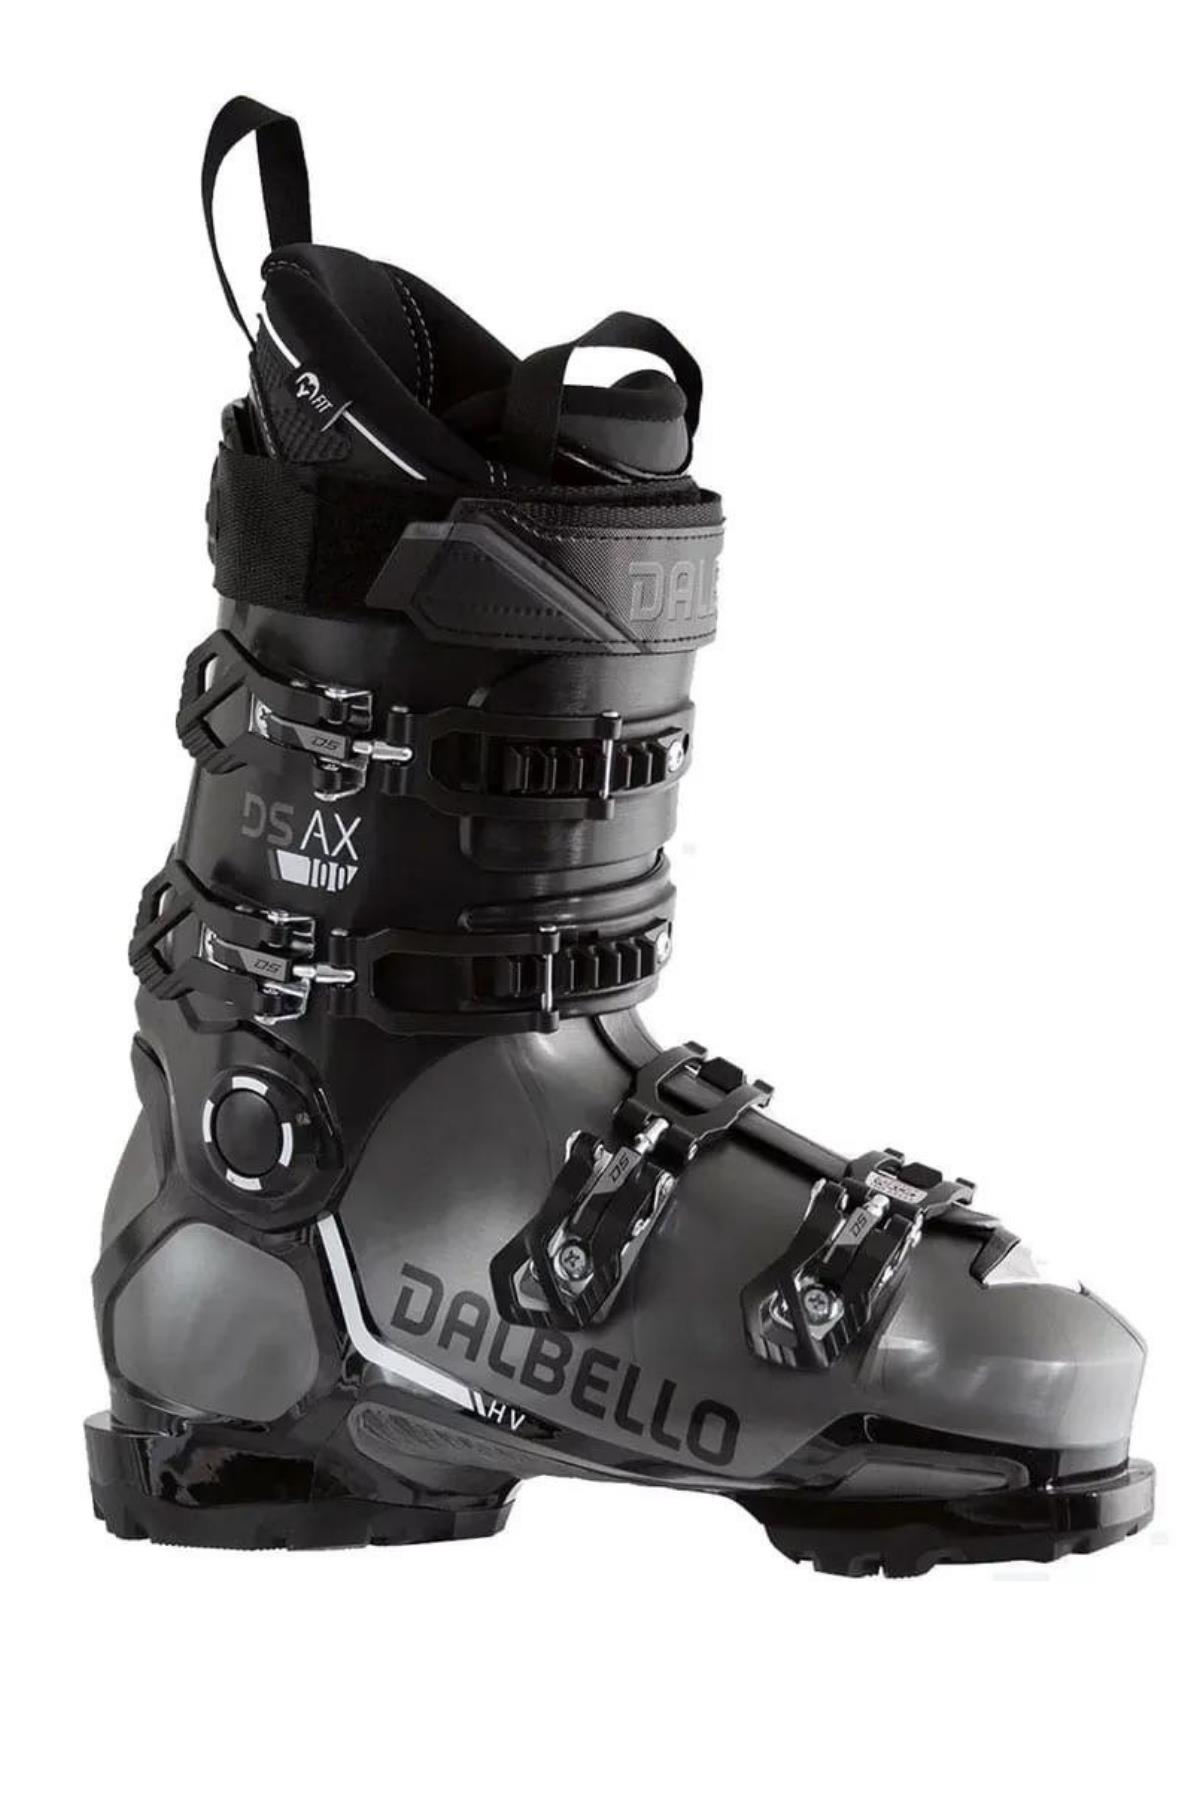 Dalbello-Ds Ax 100 Gw Kayak Ayakkabısı